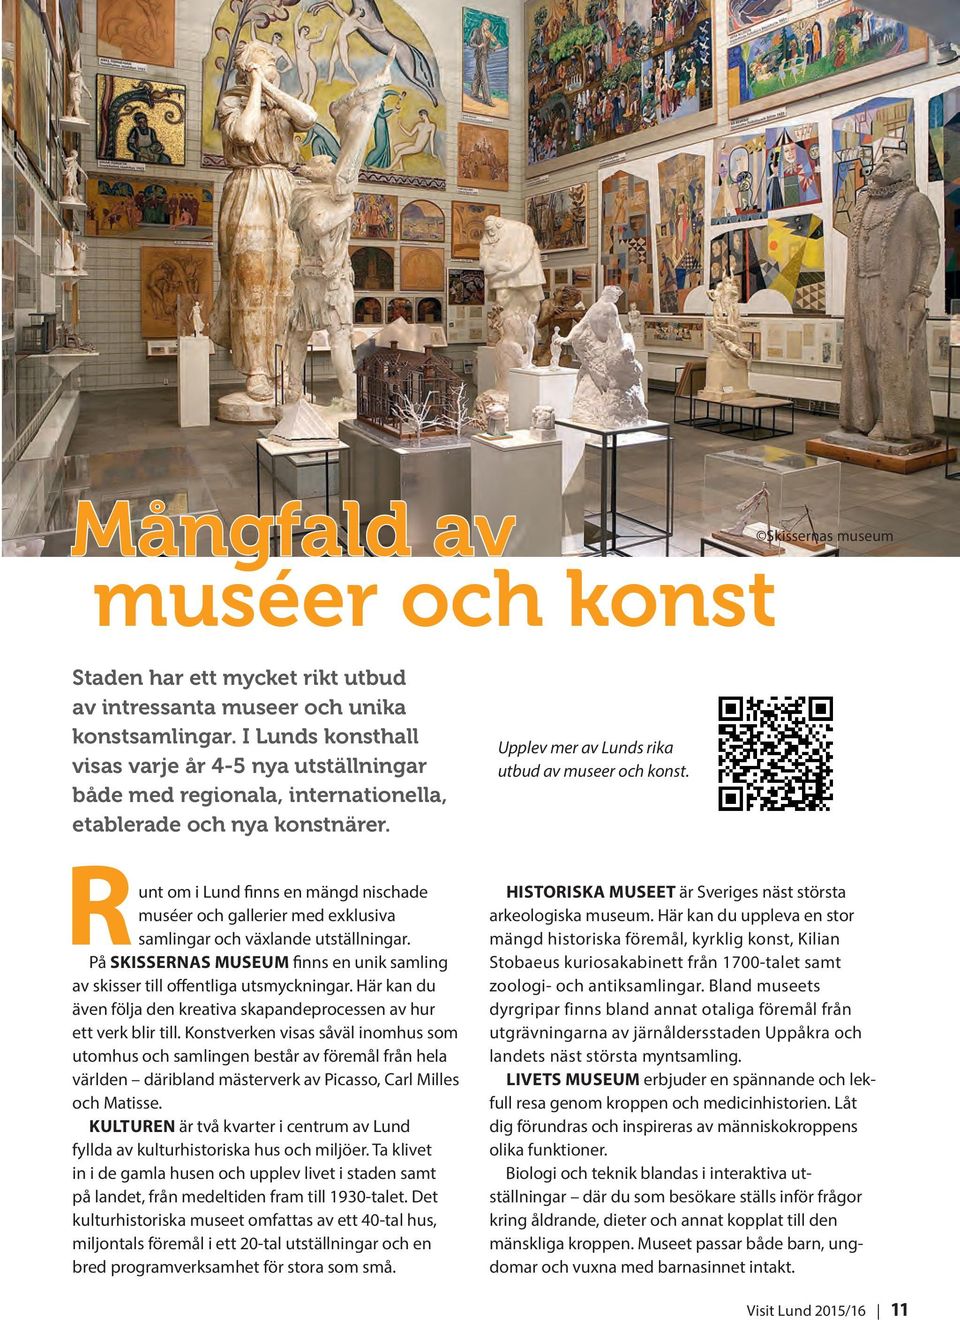 Runt om i Lund finns en mängd nischad e muséer och gallerier med exklusiva samlingar och växlande utställningar. På SKISSERNAS MUSEUM finns en unik samling av skisser till offentliga utsmyckningar.